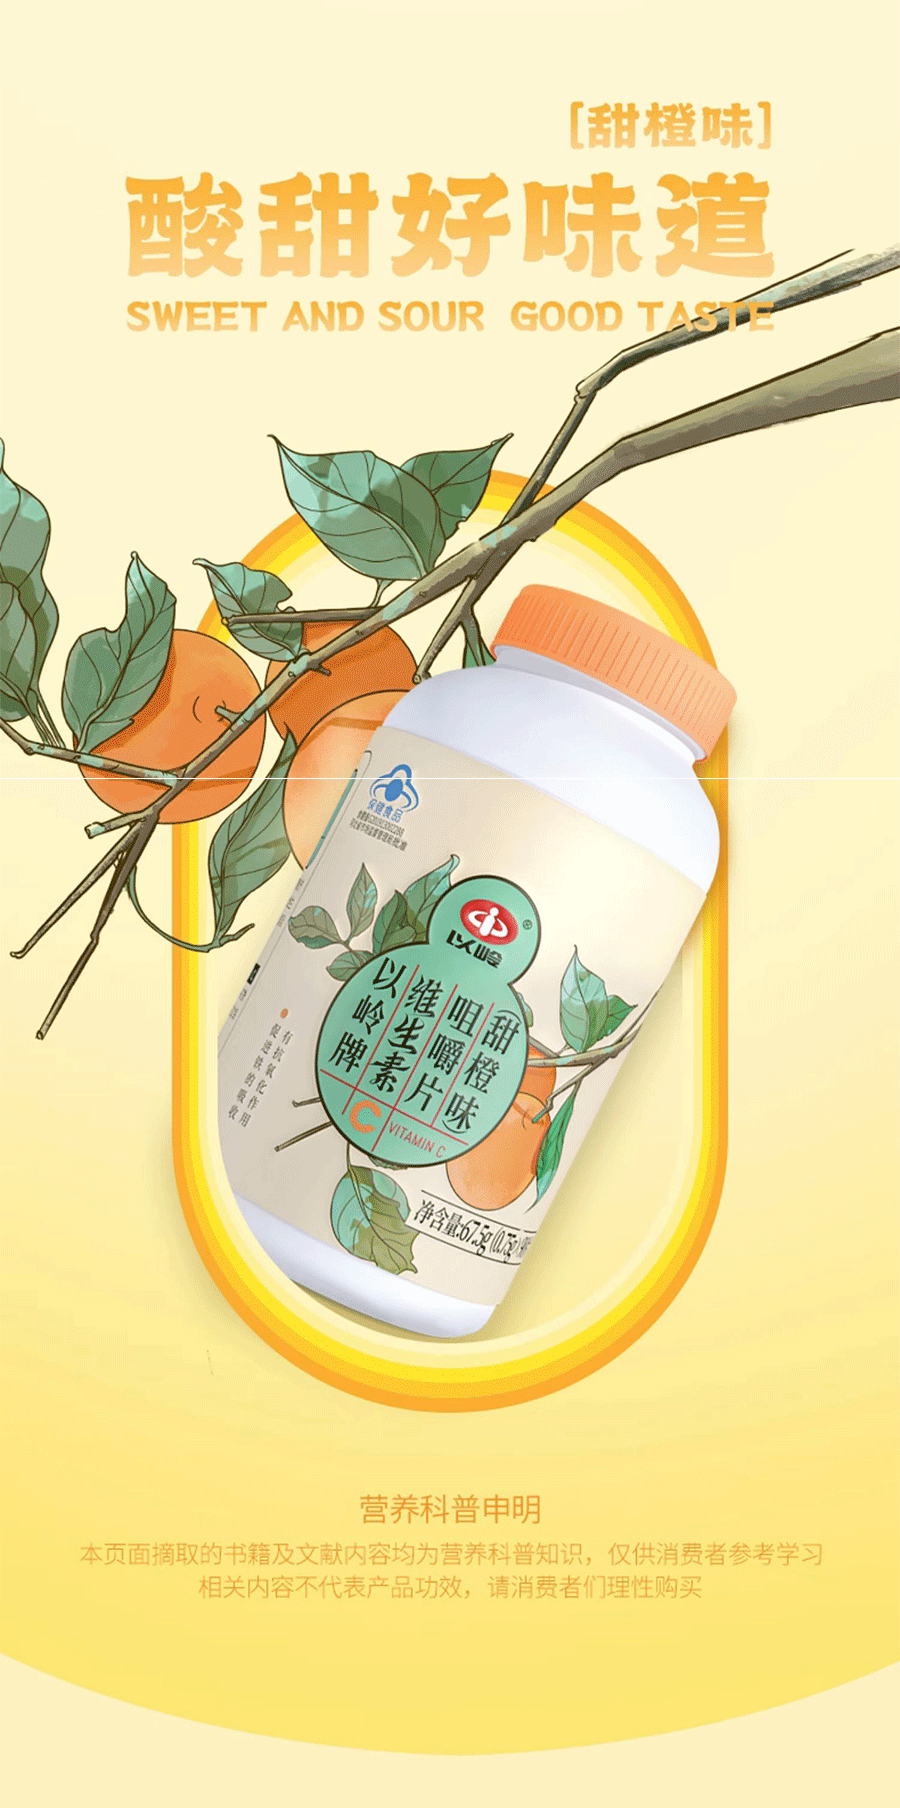 中國以嶺 維生素C咀嚼片 補充維生素C 提高免疫力 預防感冒 緩解牙齦出血 甜橙口味 90粒/瓶